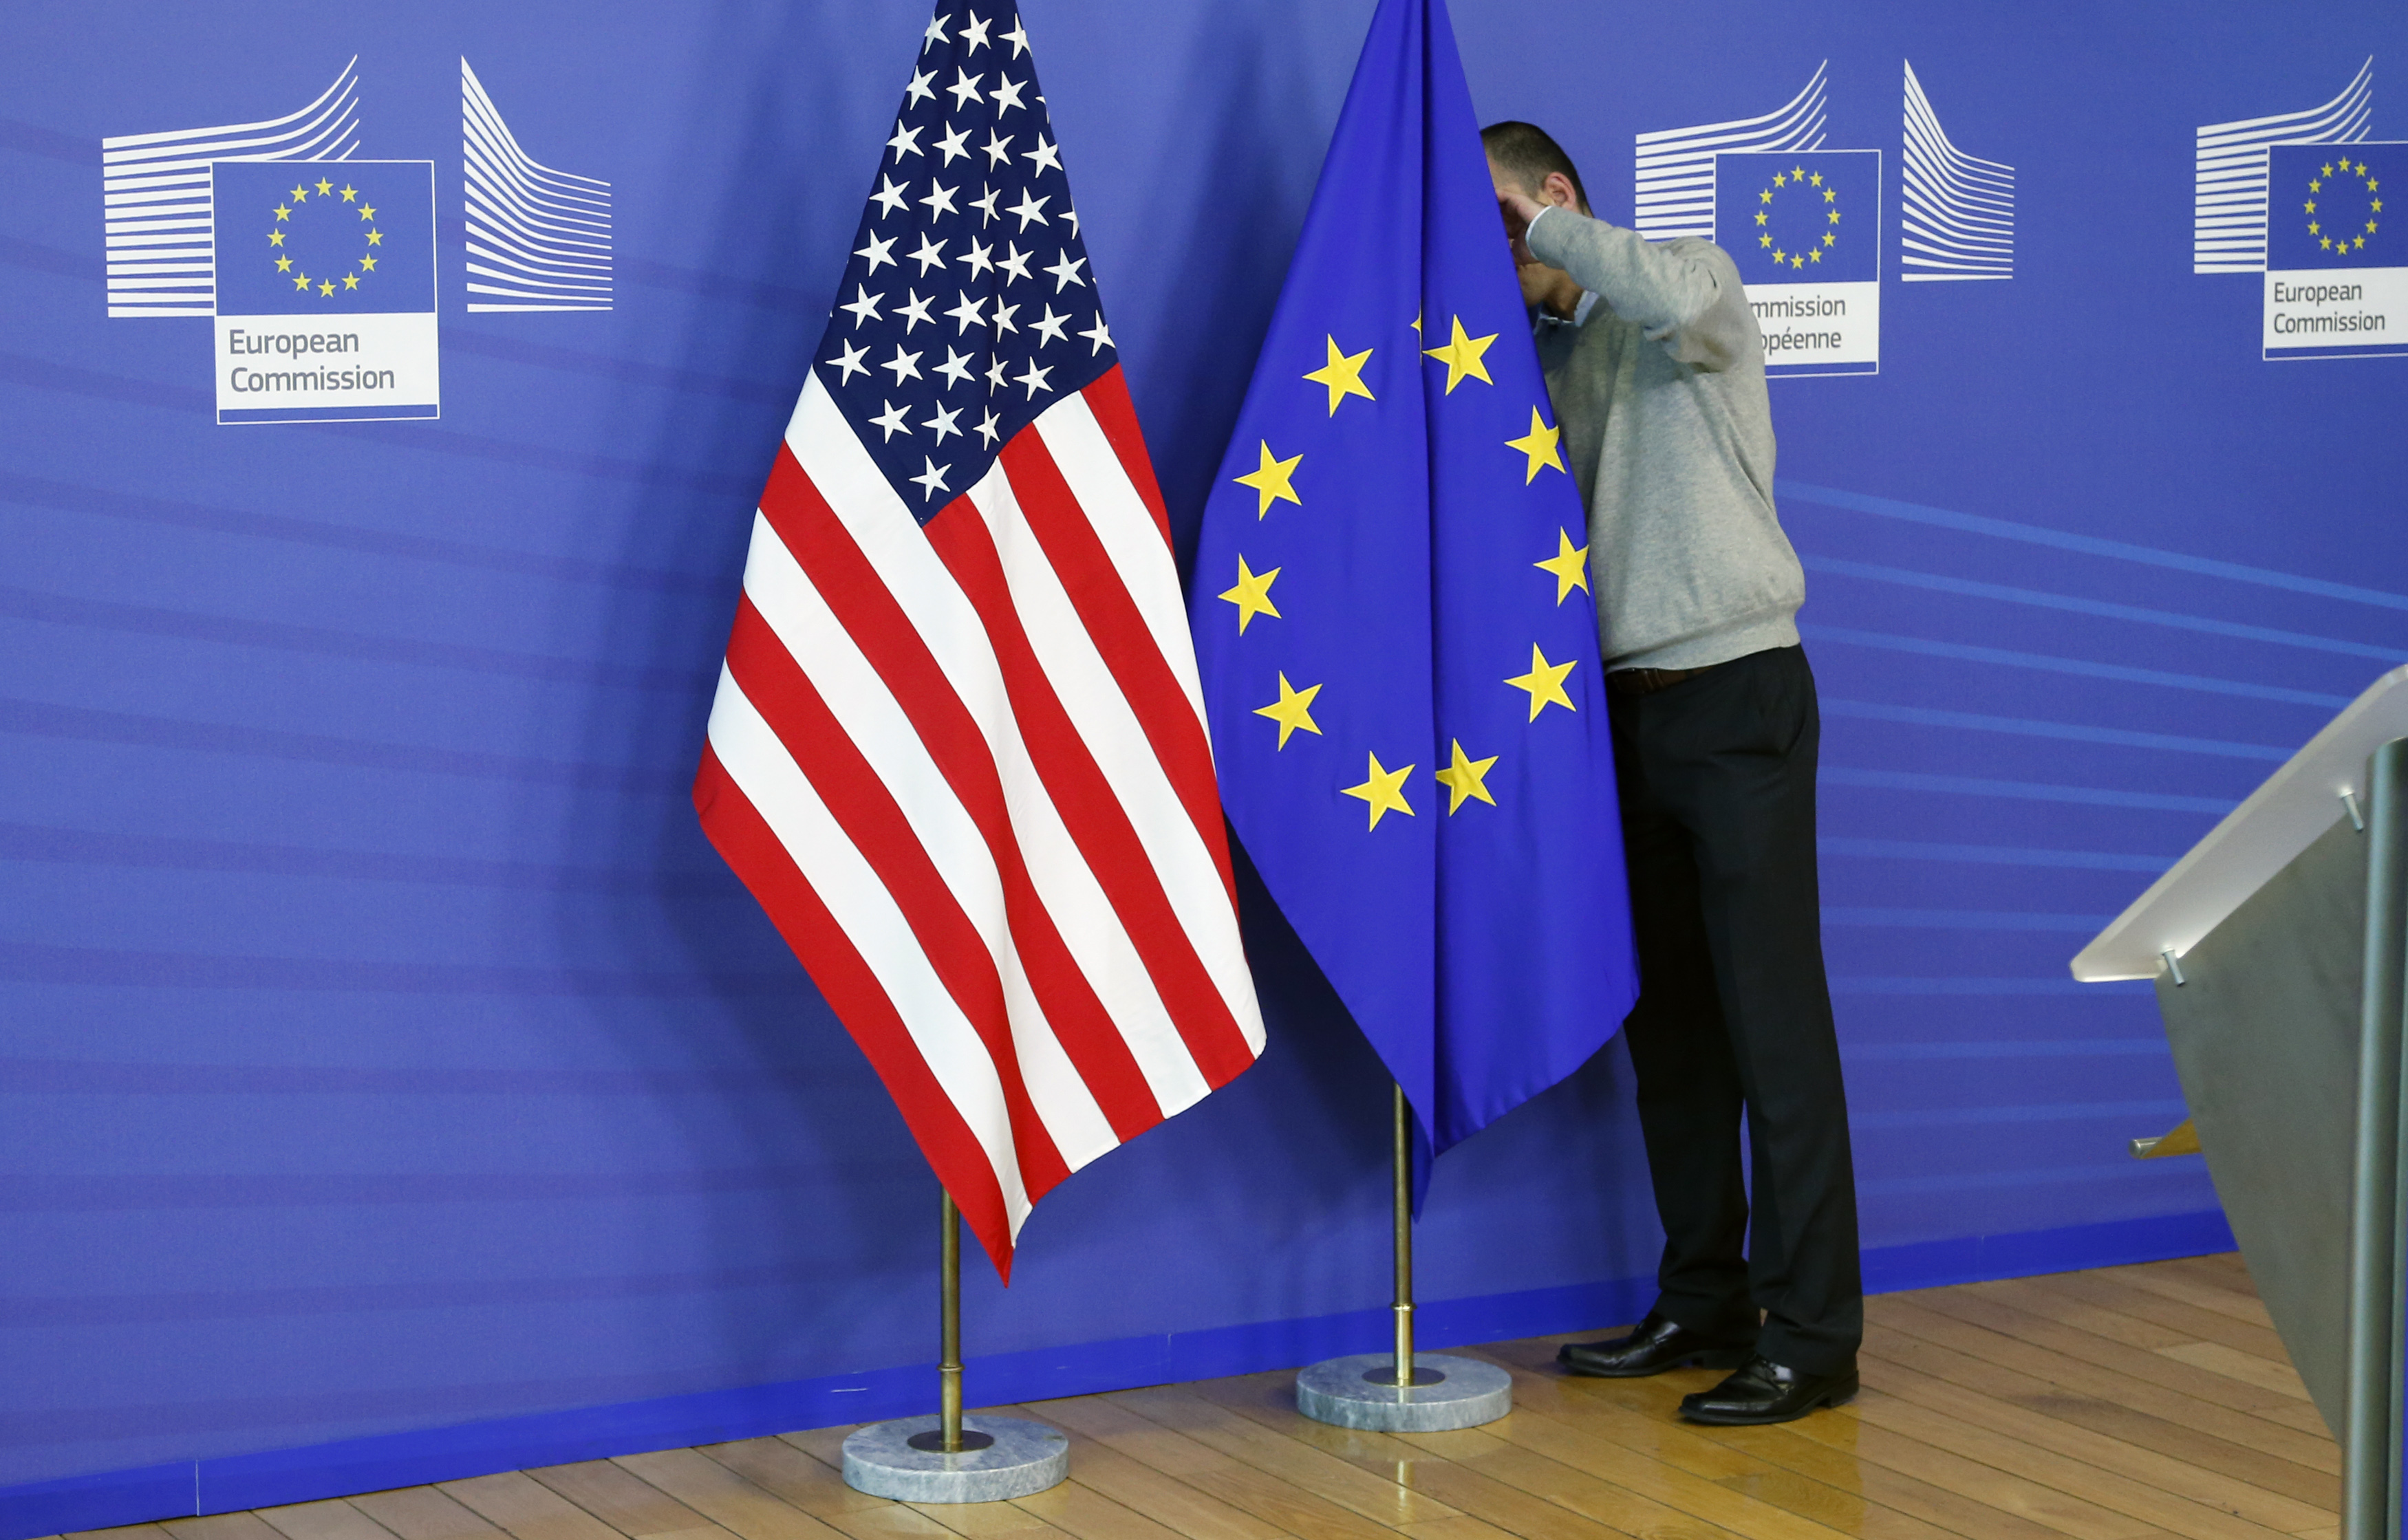 Евросоюз страны сша. Флаг США И Евросоюза. США И ЕС. США И Евросоюз. Флаги ЕС И США.